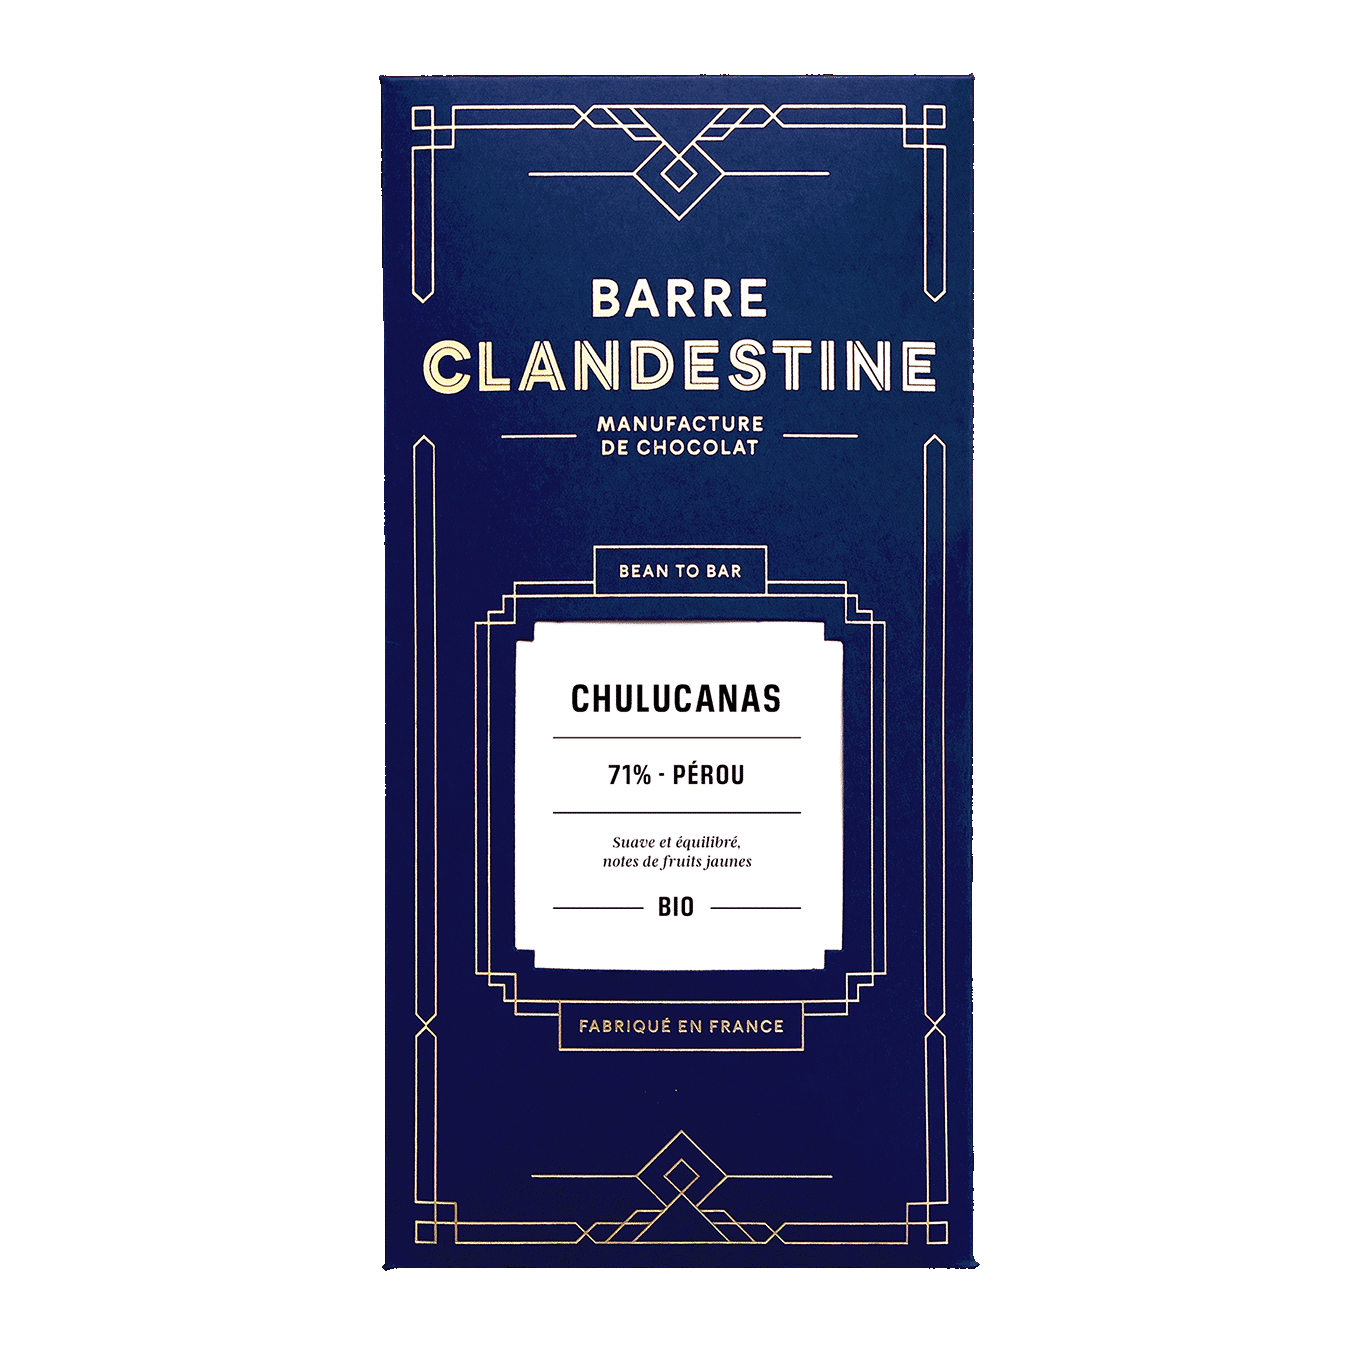 Chulucanas chocolat gastronomique